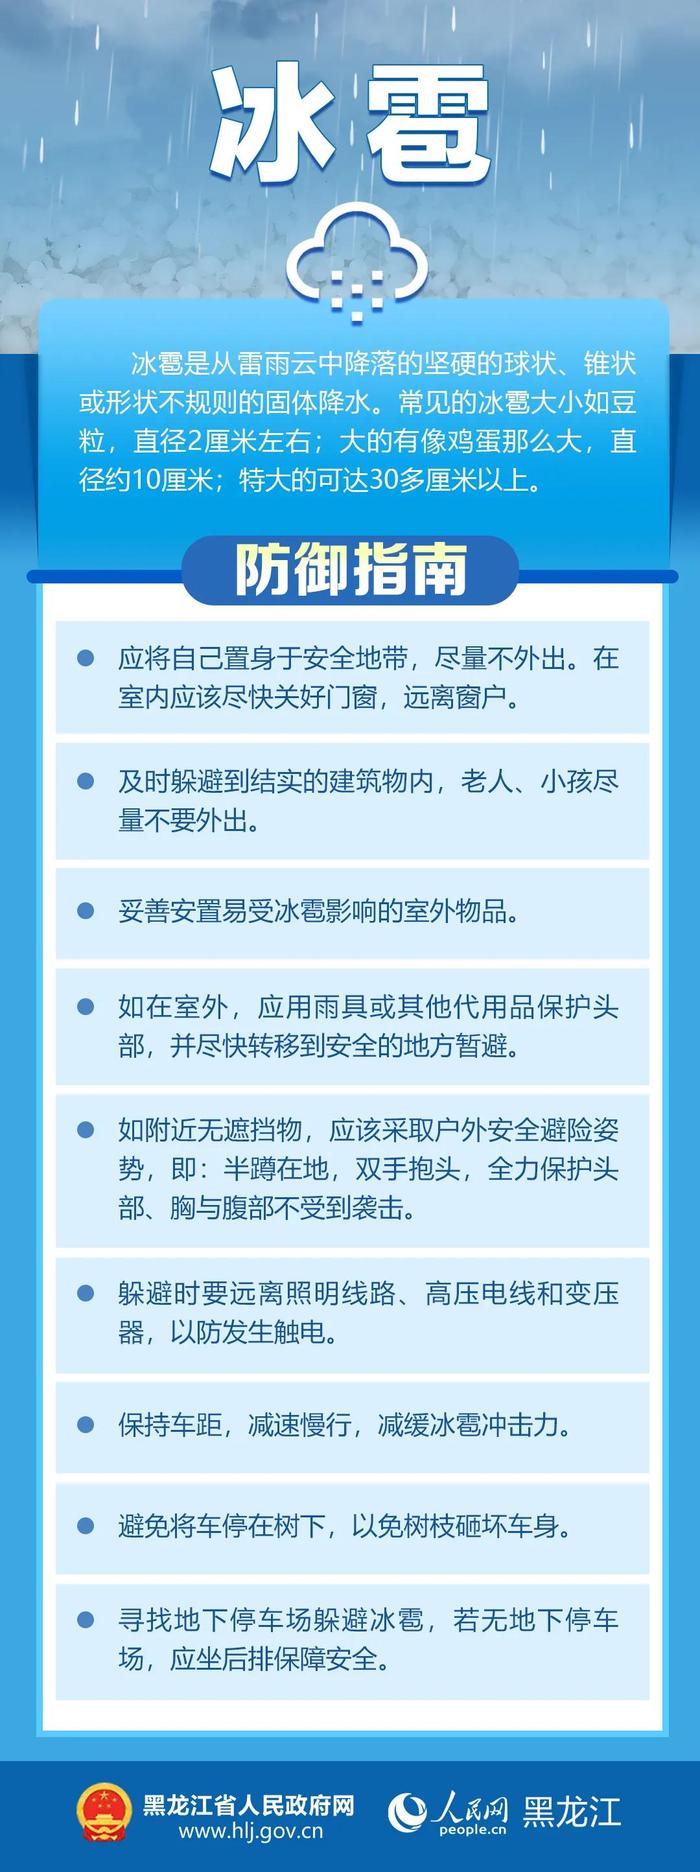 黑龙江省发布强对流天气预报、暴雨红色预警